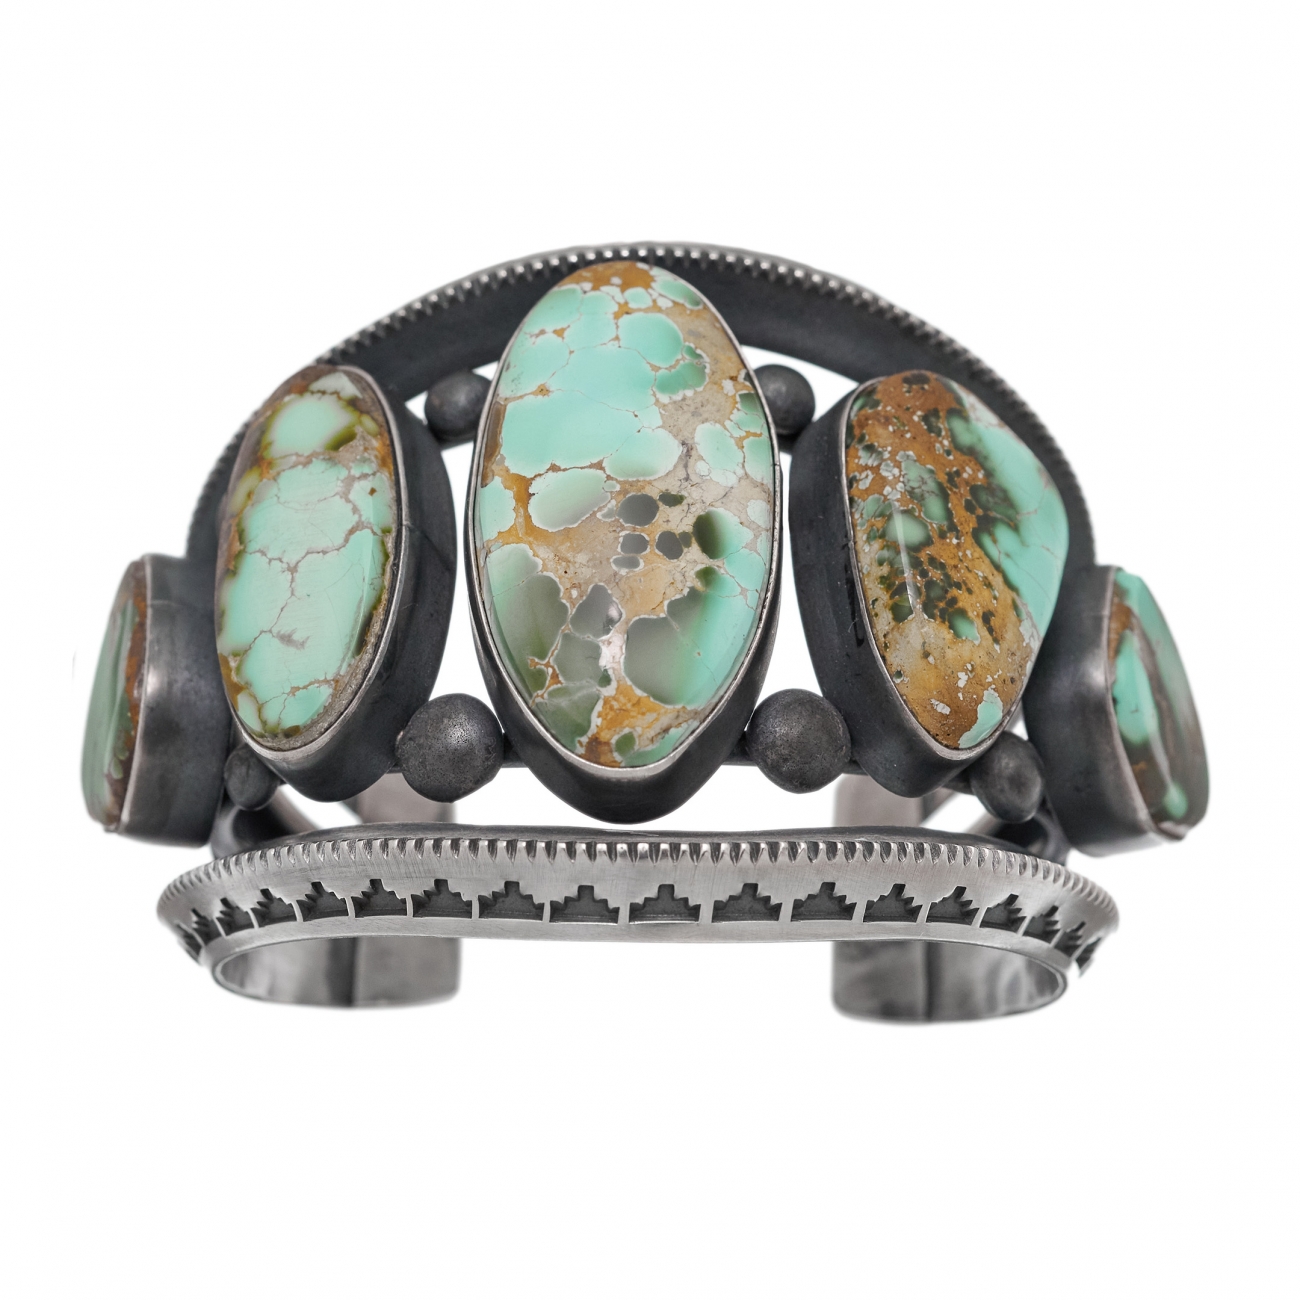 Superbe bracelet Navajo en turquoise argent - Harpo Paris